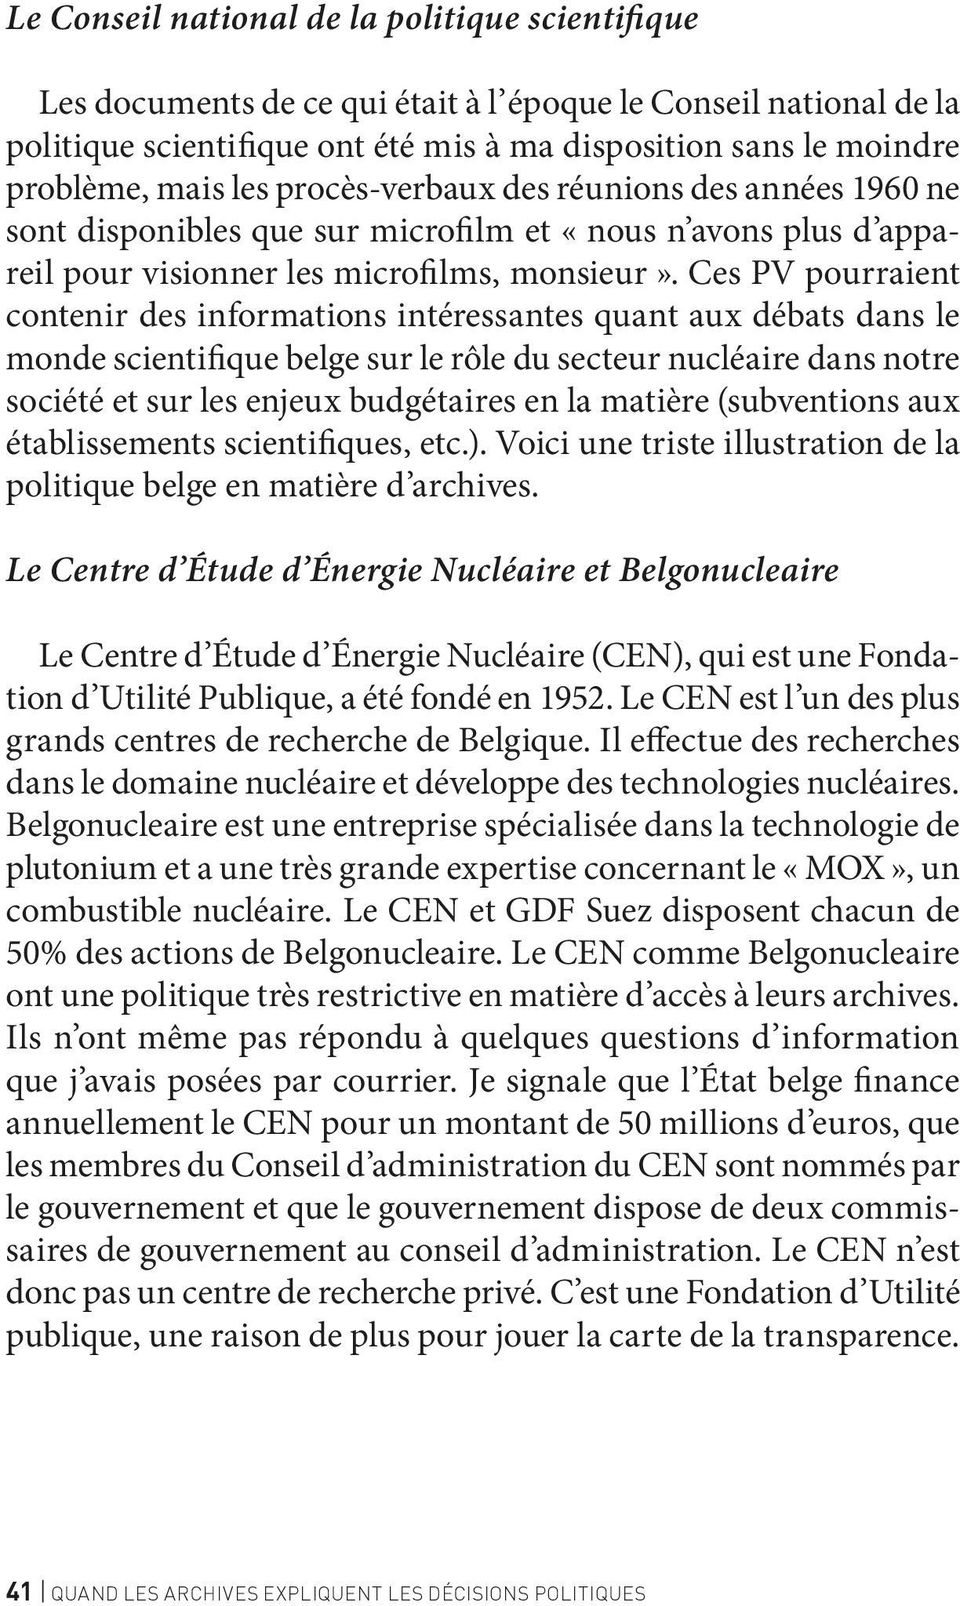 Ces PV pourraient contenir des informations intéressantes quant aux débats dans le monde scientifique belge sur le rôle du secteur nucléaire dans notre société et sur les enjeux budgétaires en la